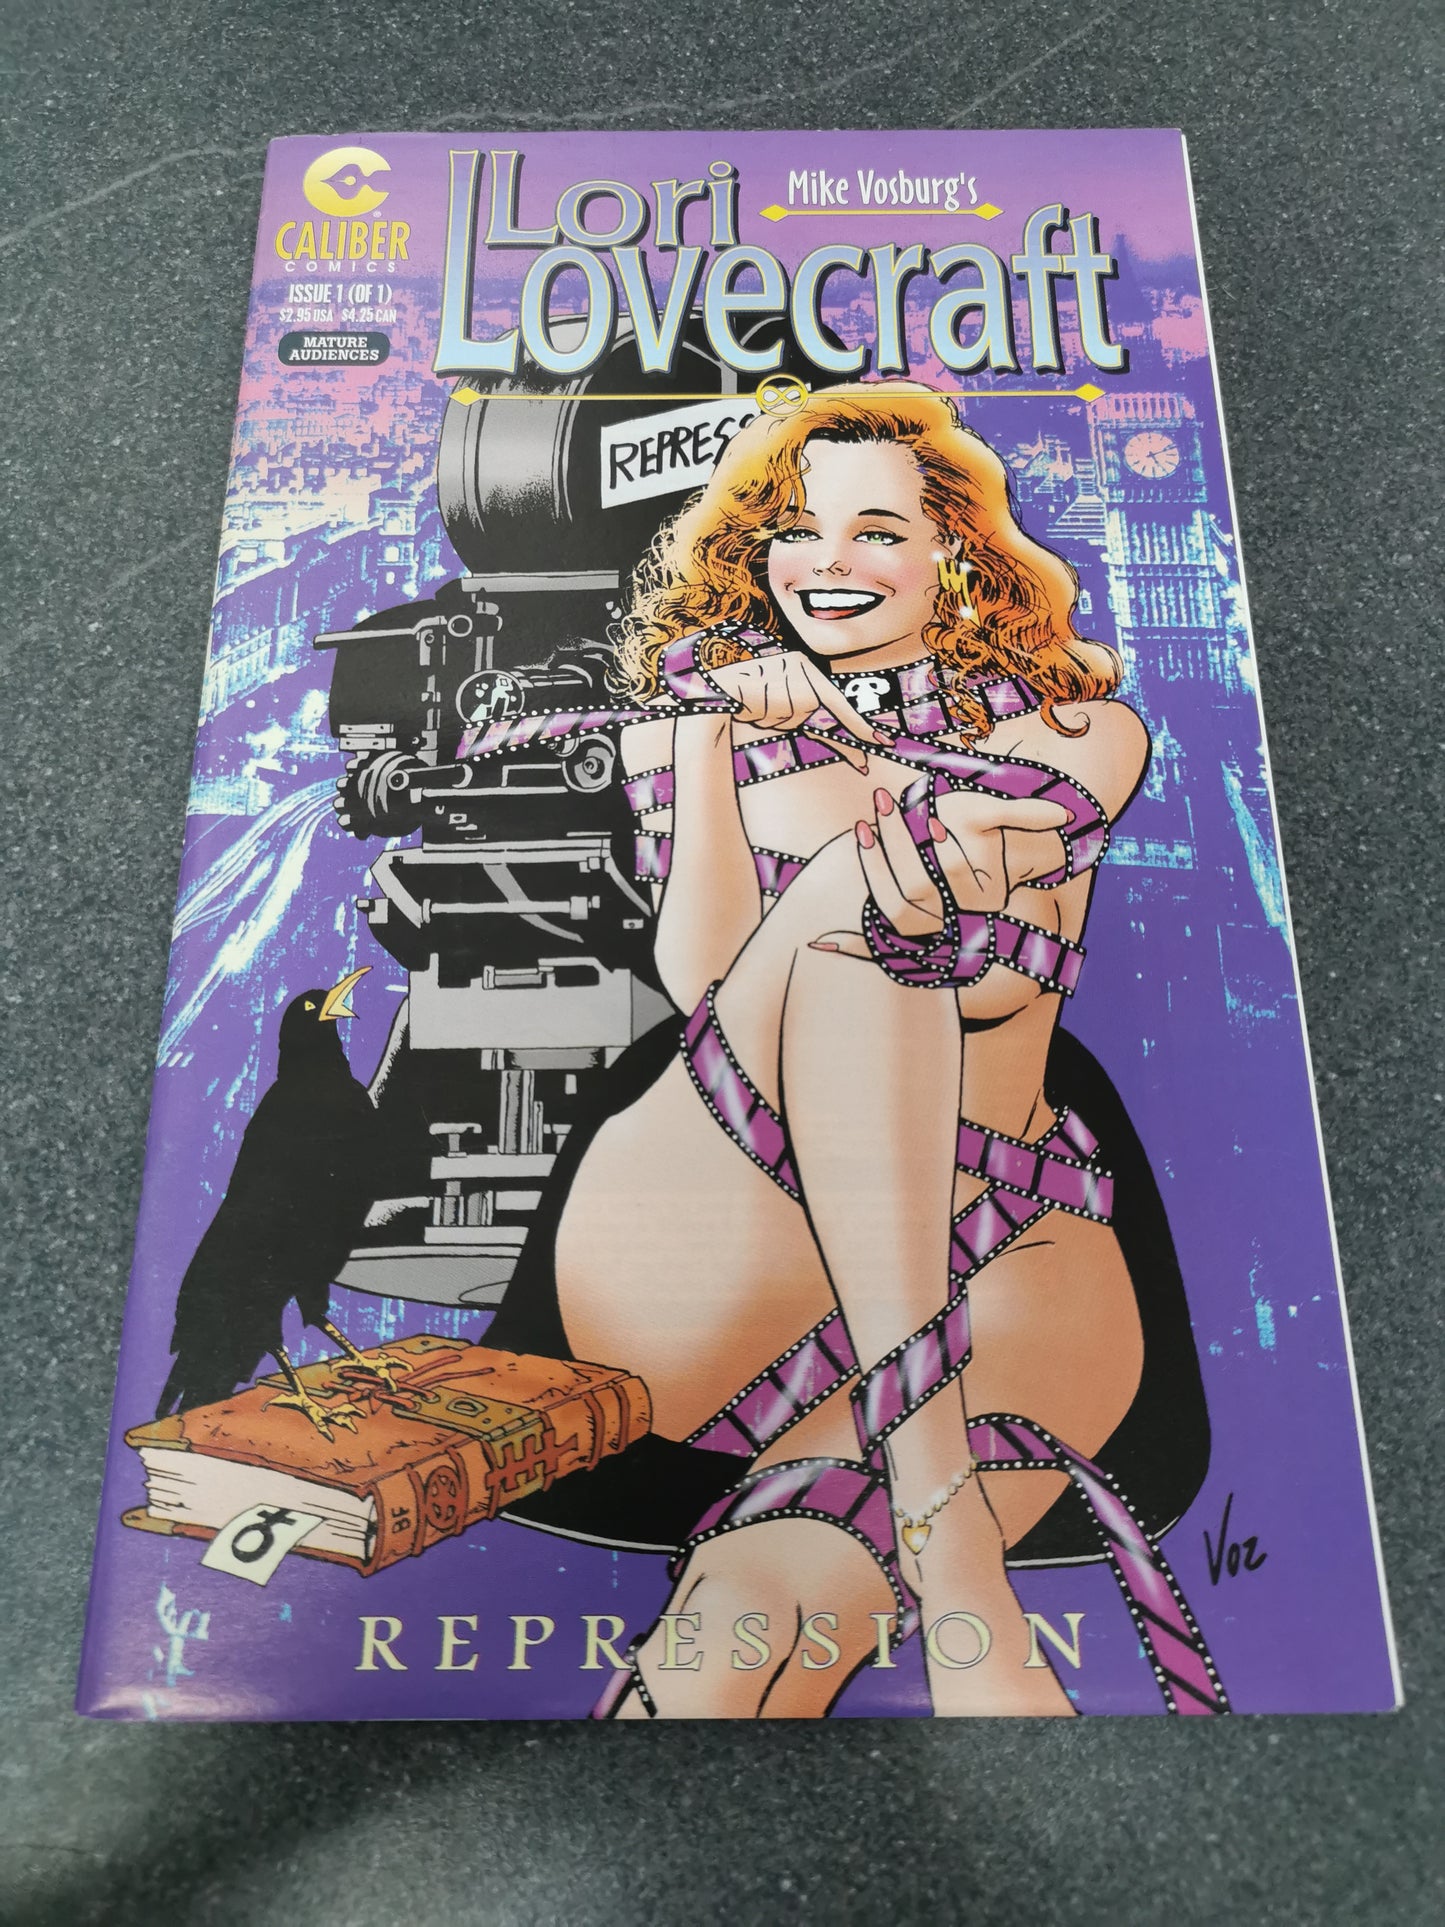 Lori Lovecraft Repression #1 1998 Caliber comic